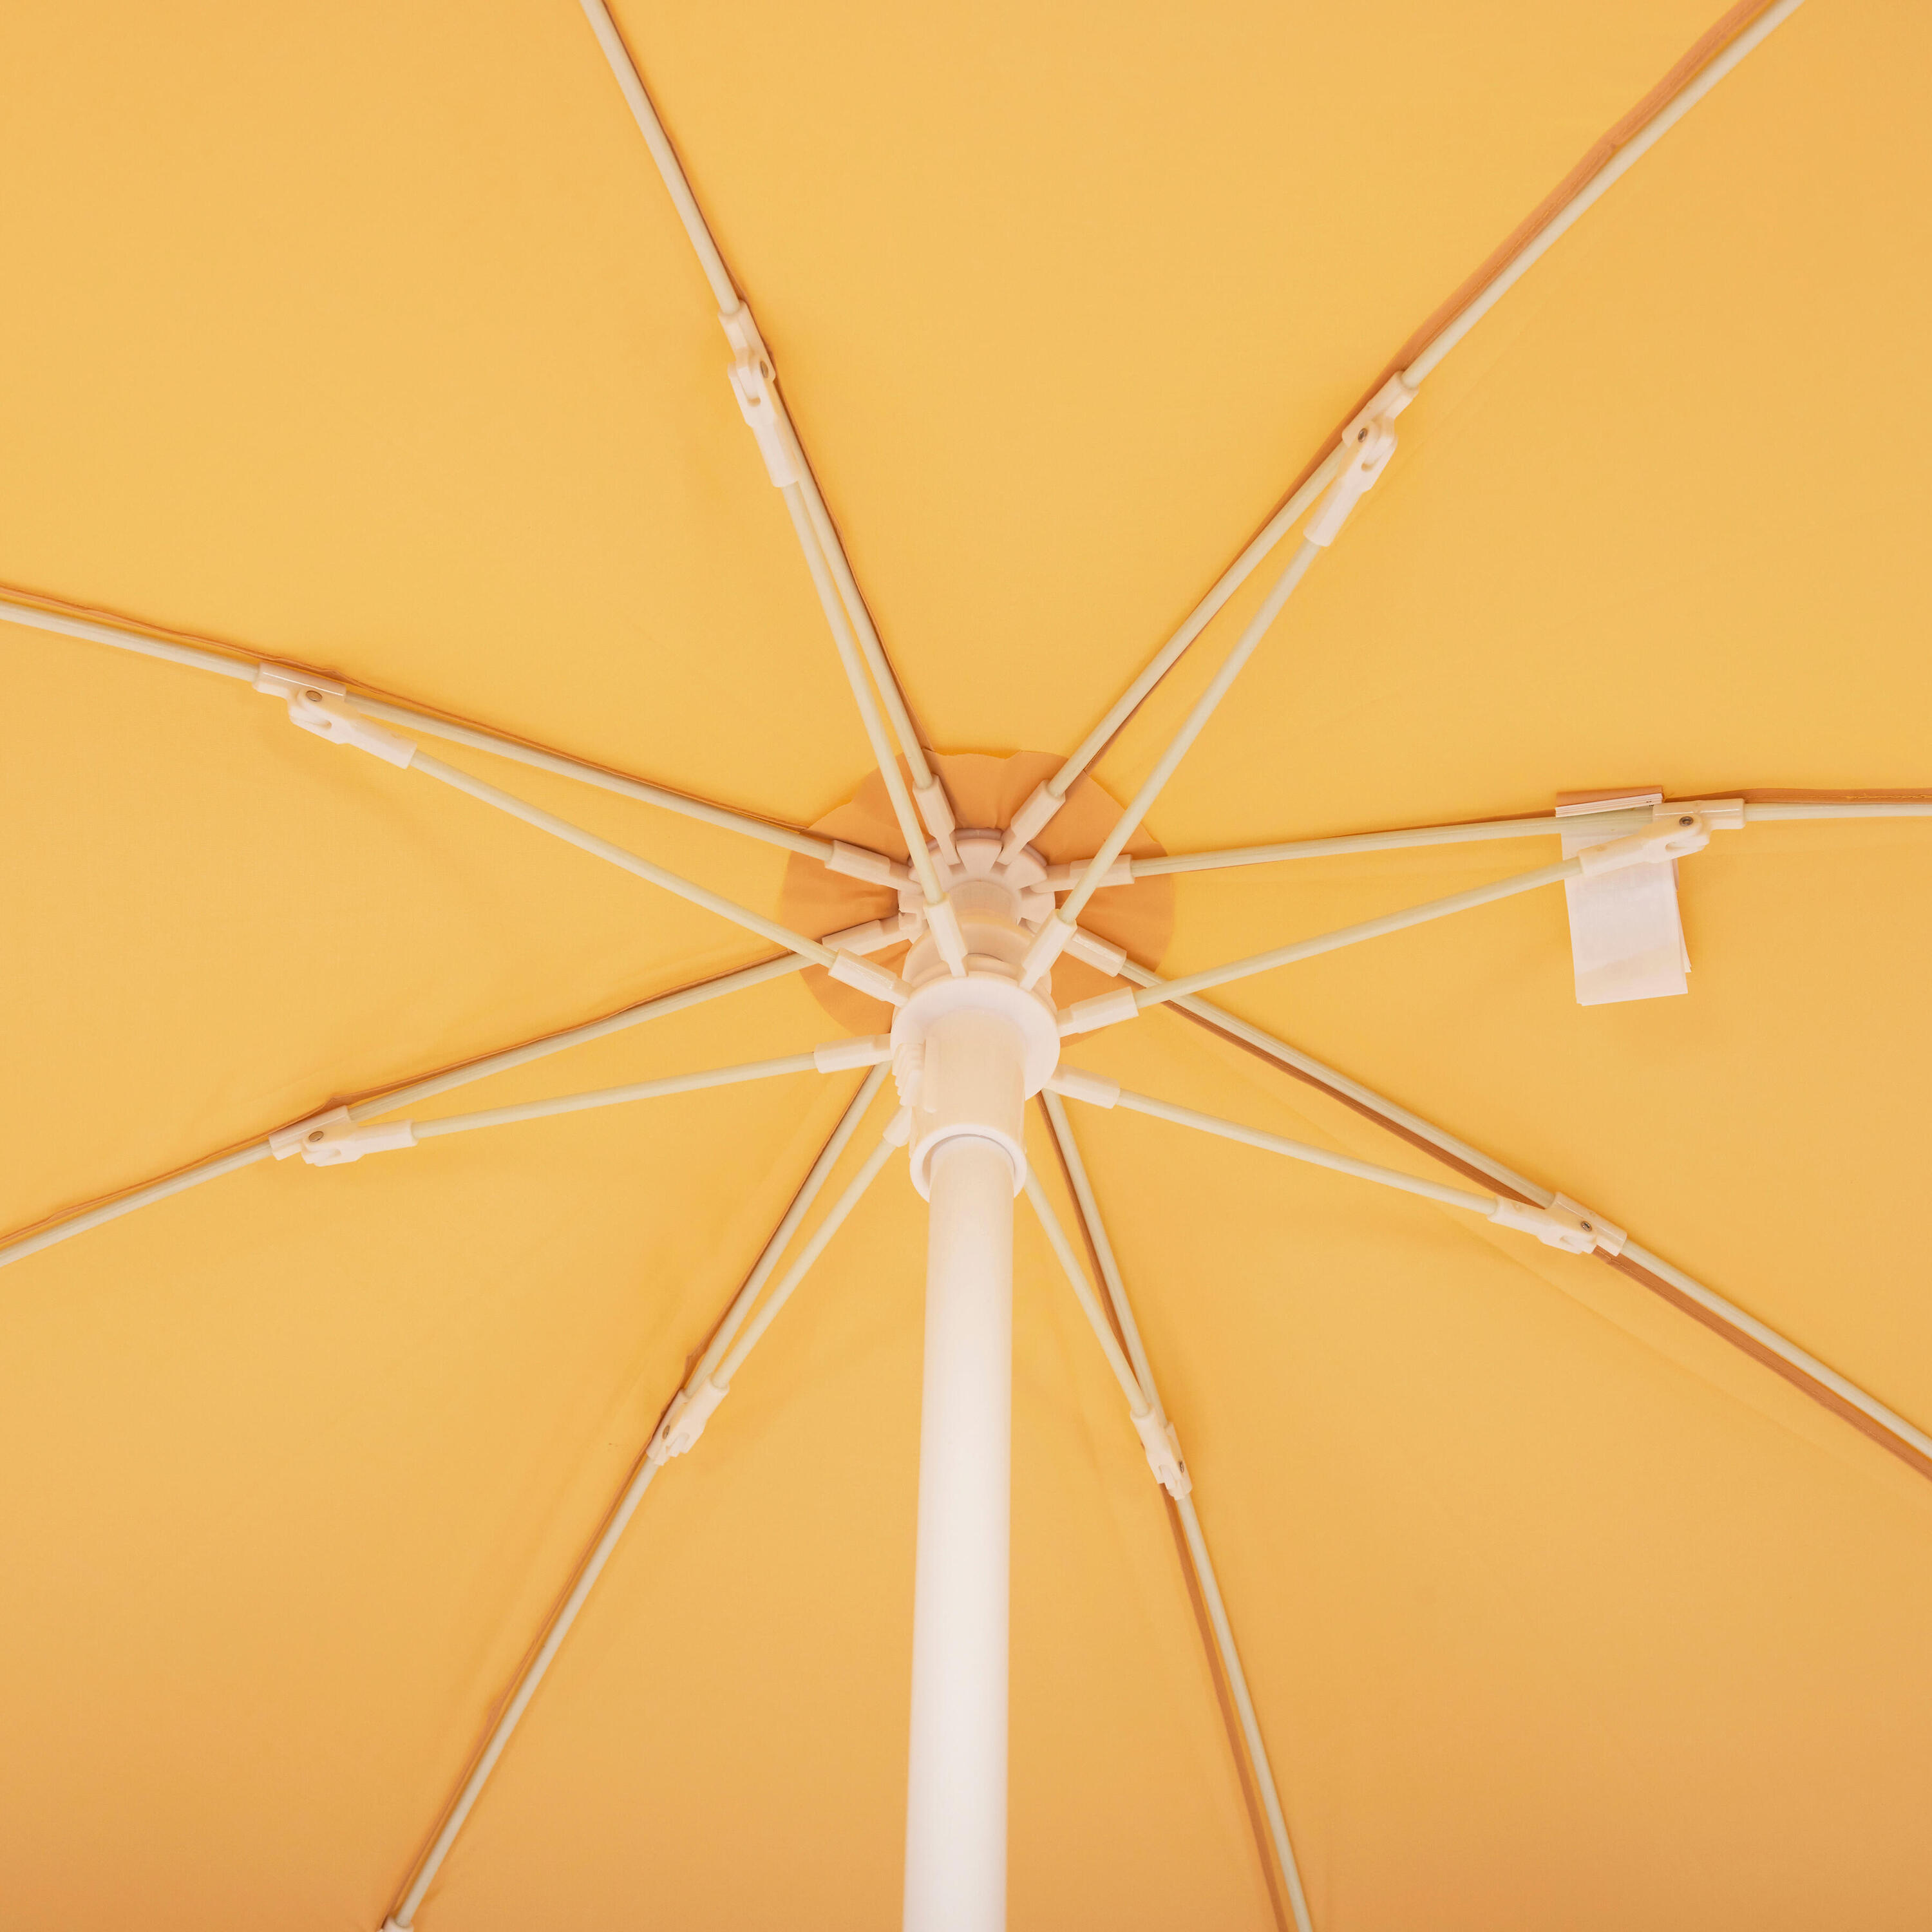 Compact beach umbrella 2 person UPF 50+ - Paruv 160 yellow ochre 5/8